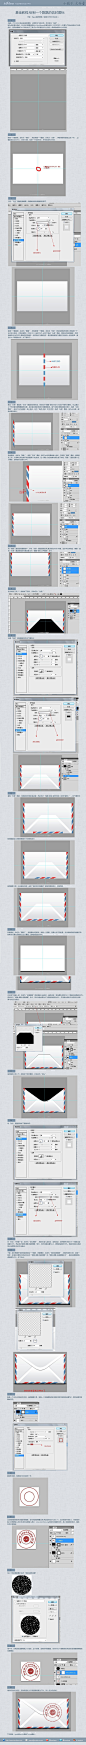 绘制一个飘飘的信封图标 - ICONFANS|图标粉丝网|专业图标界面设计论坛,软件界面设计,图标制作下载,人机交互设计